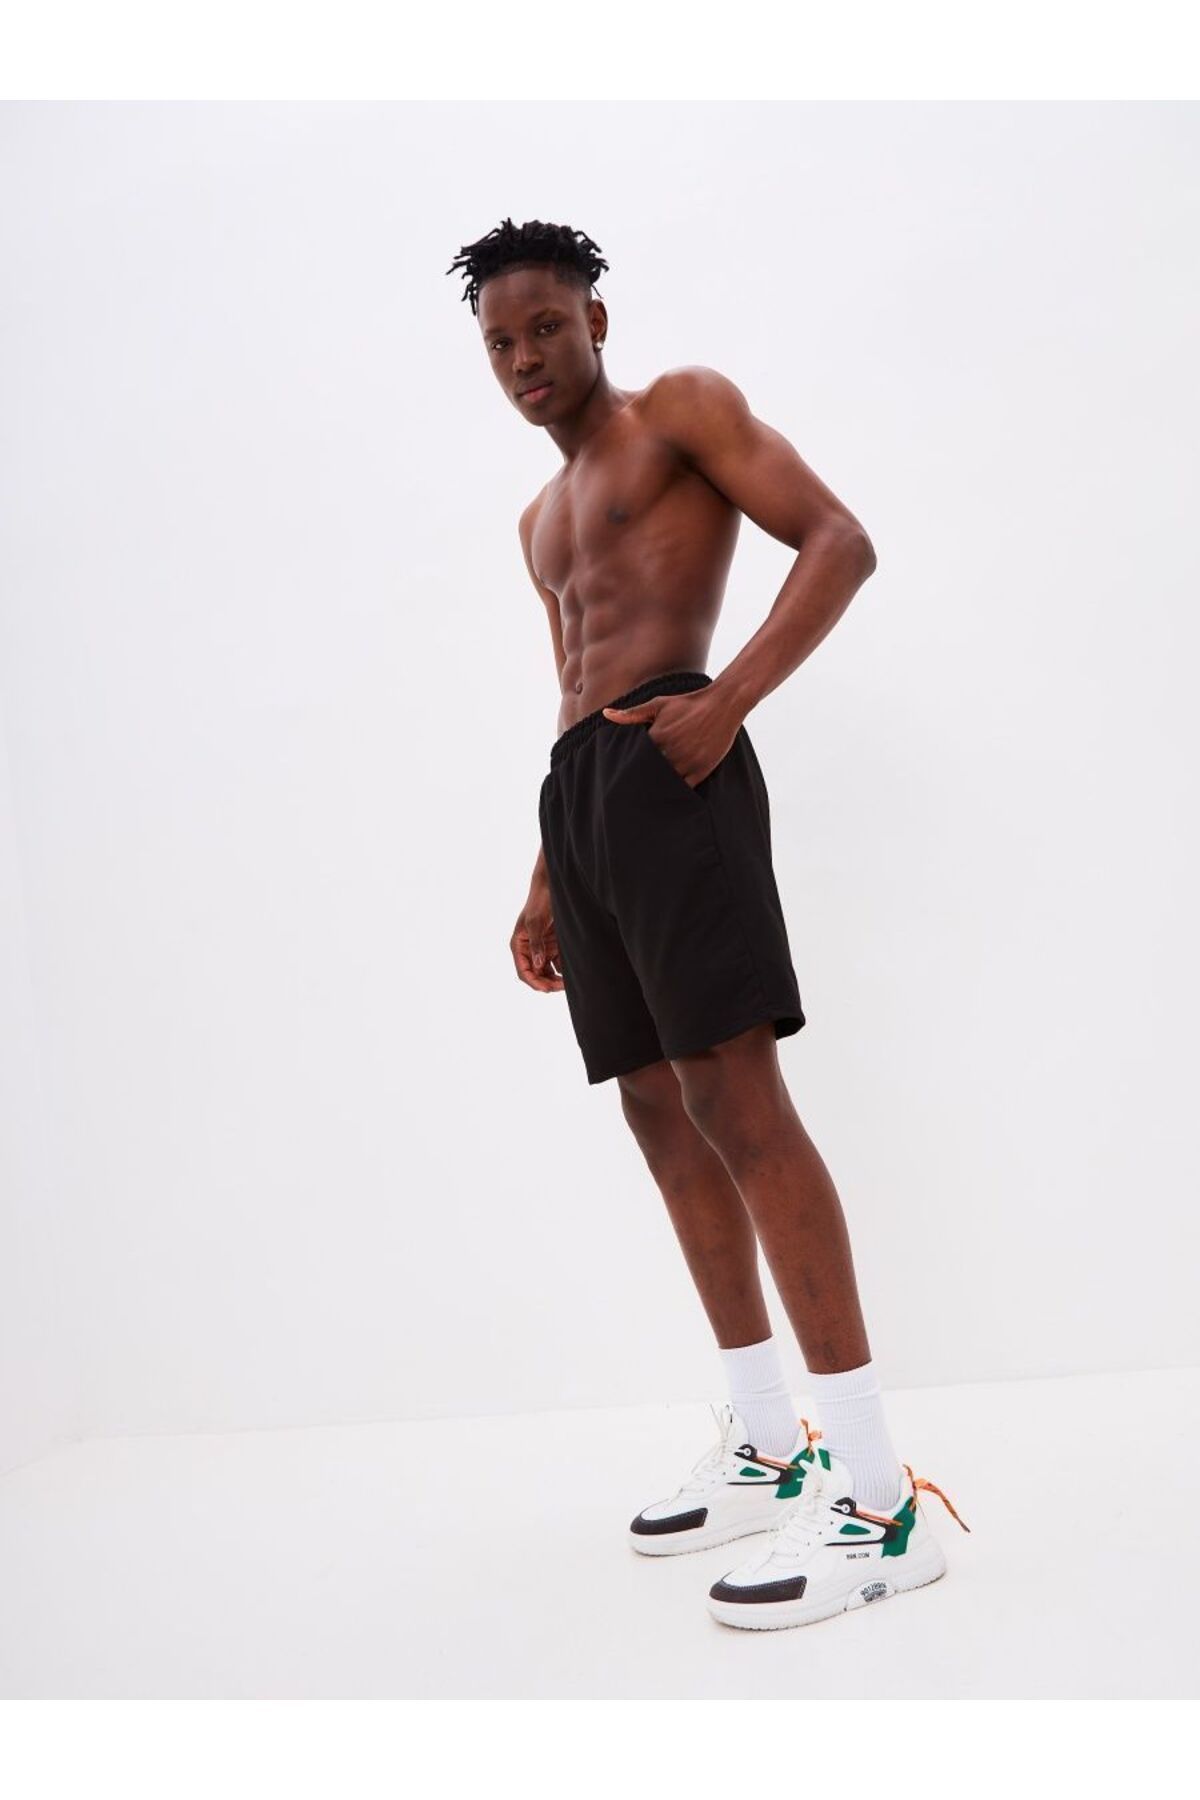 MİSTİRİK Viterbo Model Boks Şortu Spor Geniş Bol Kesim Penye Sporcu Şortu Siyah Renk